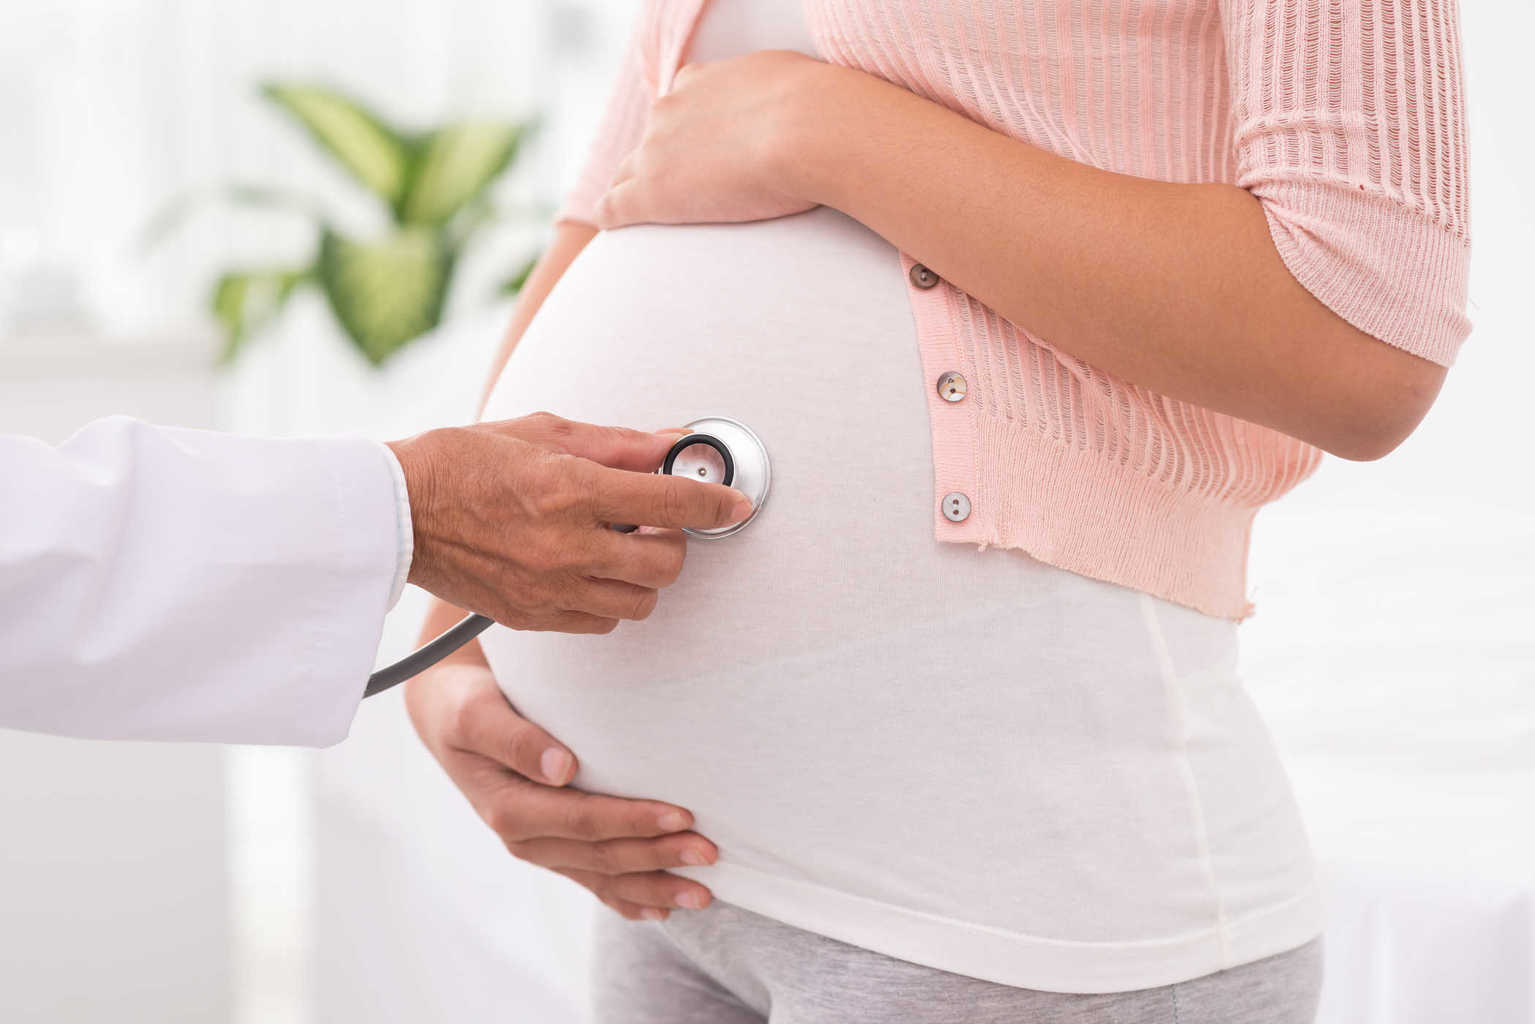 مخاطر تسمم الحمل عند النساء الحوامل والجنين